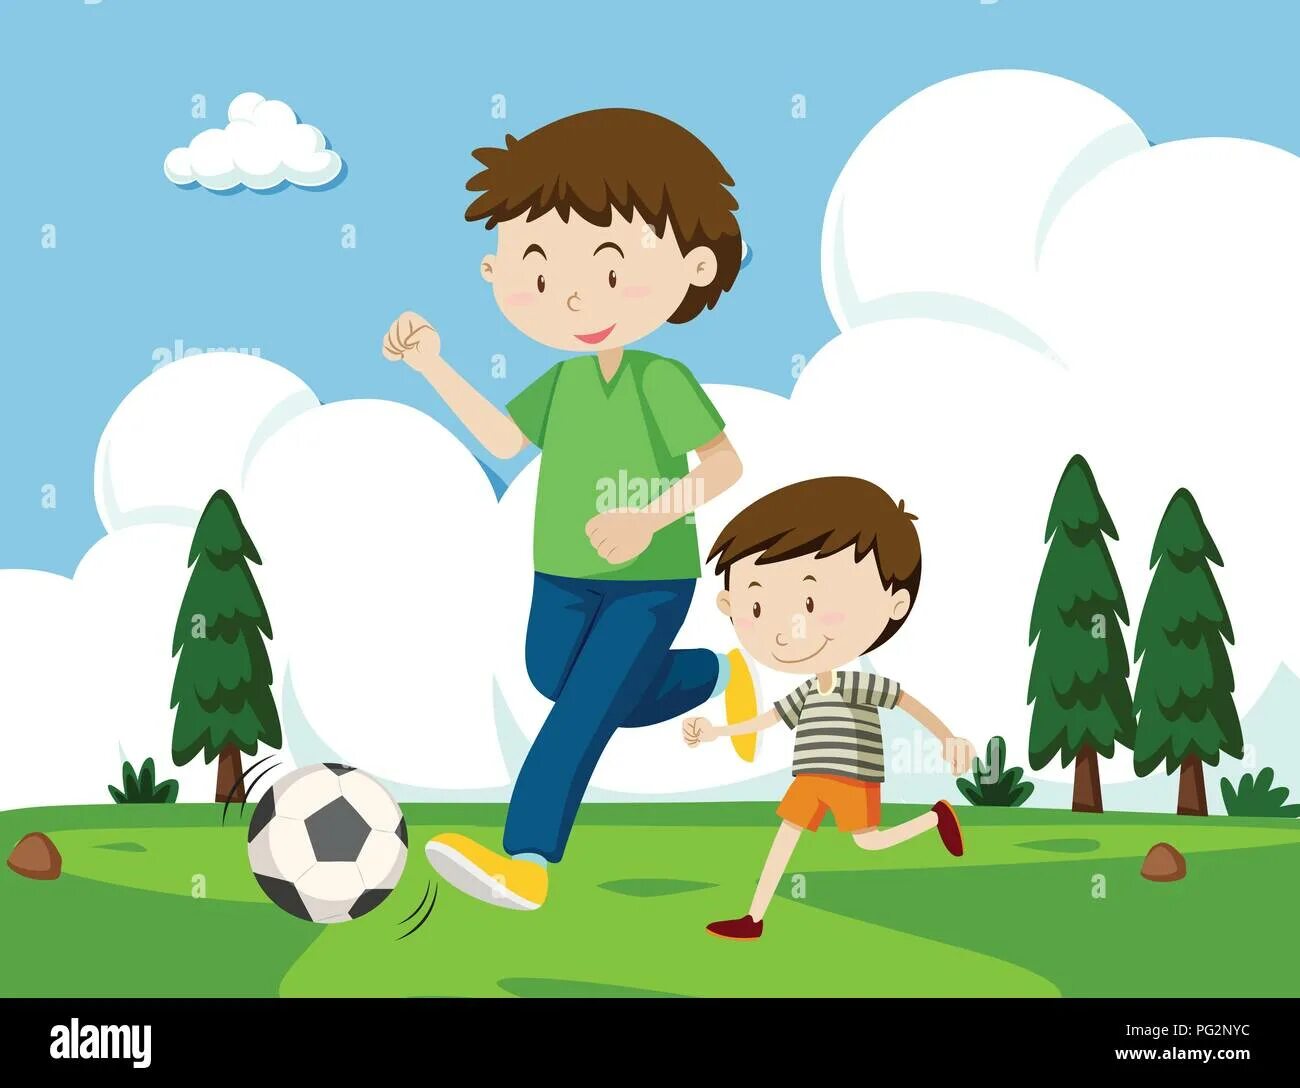 Детская иллюстрация папа и сын. Папа играет в футбол иллюстрация. Папа с ребенком играют в футбол. Сюжетная картина футбол для детей. Папа играет в футбол